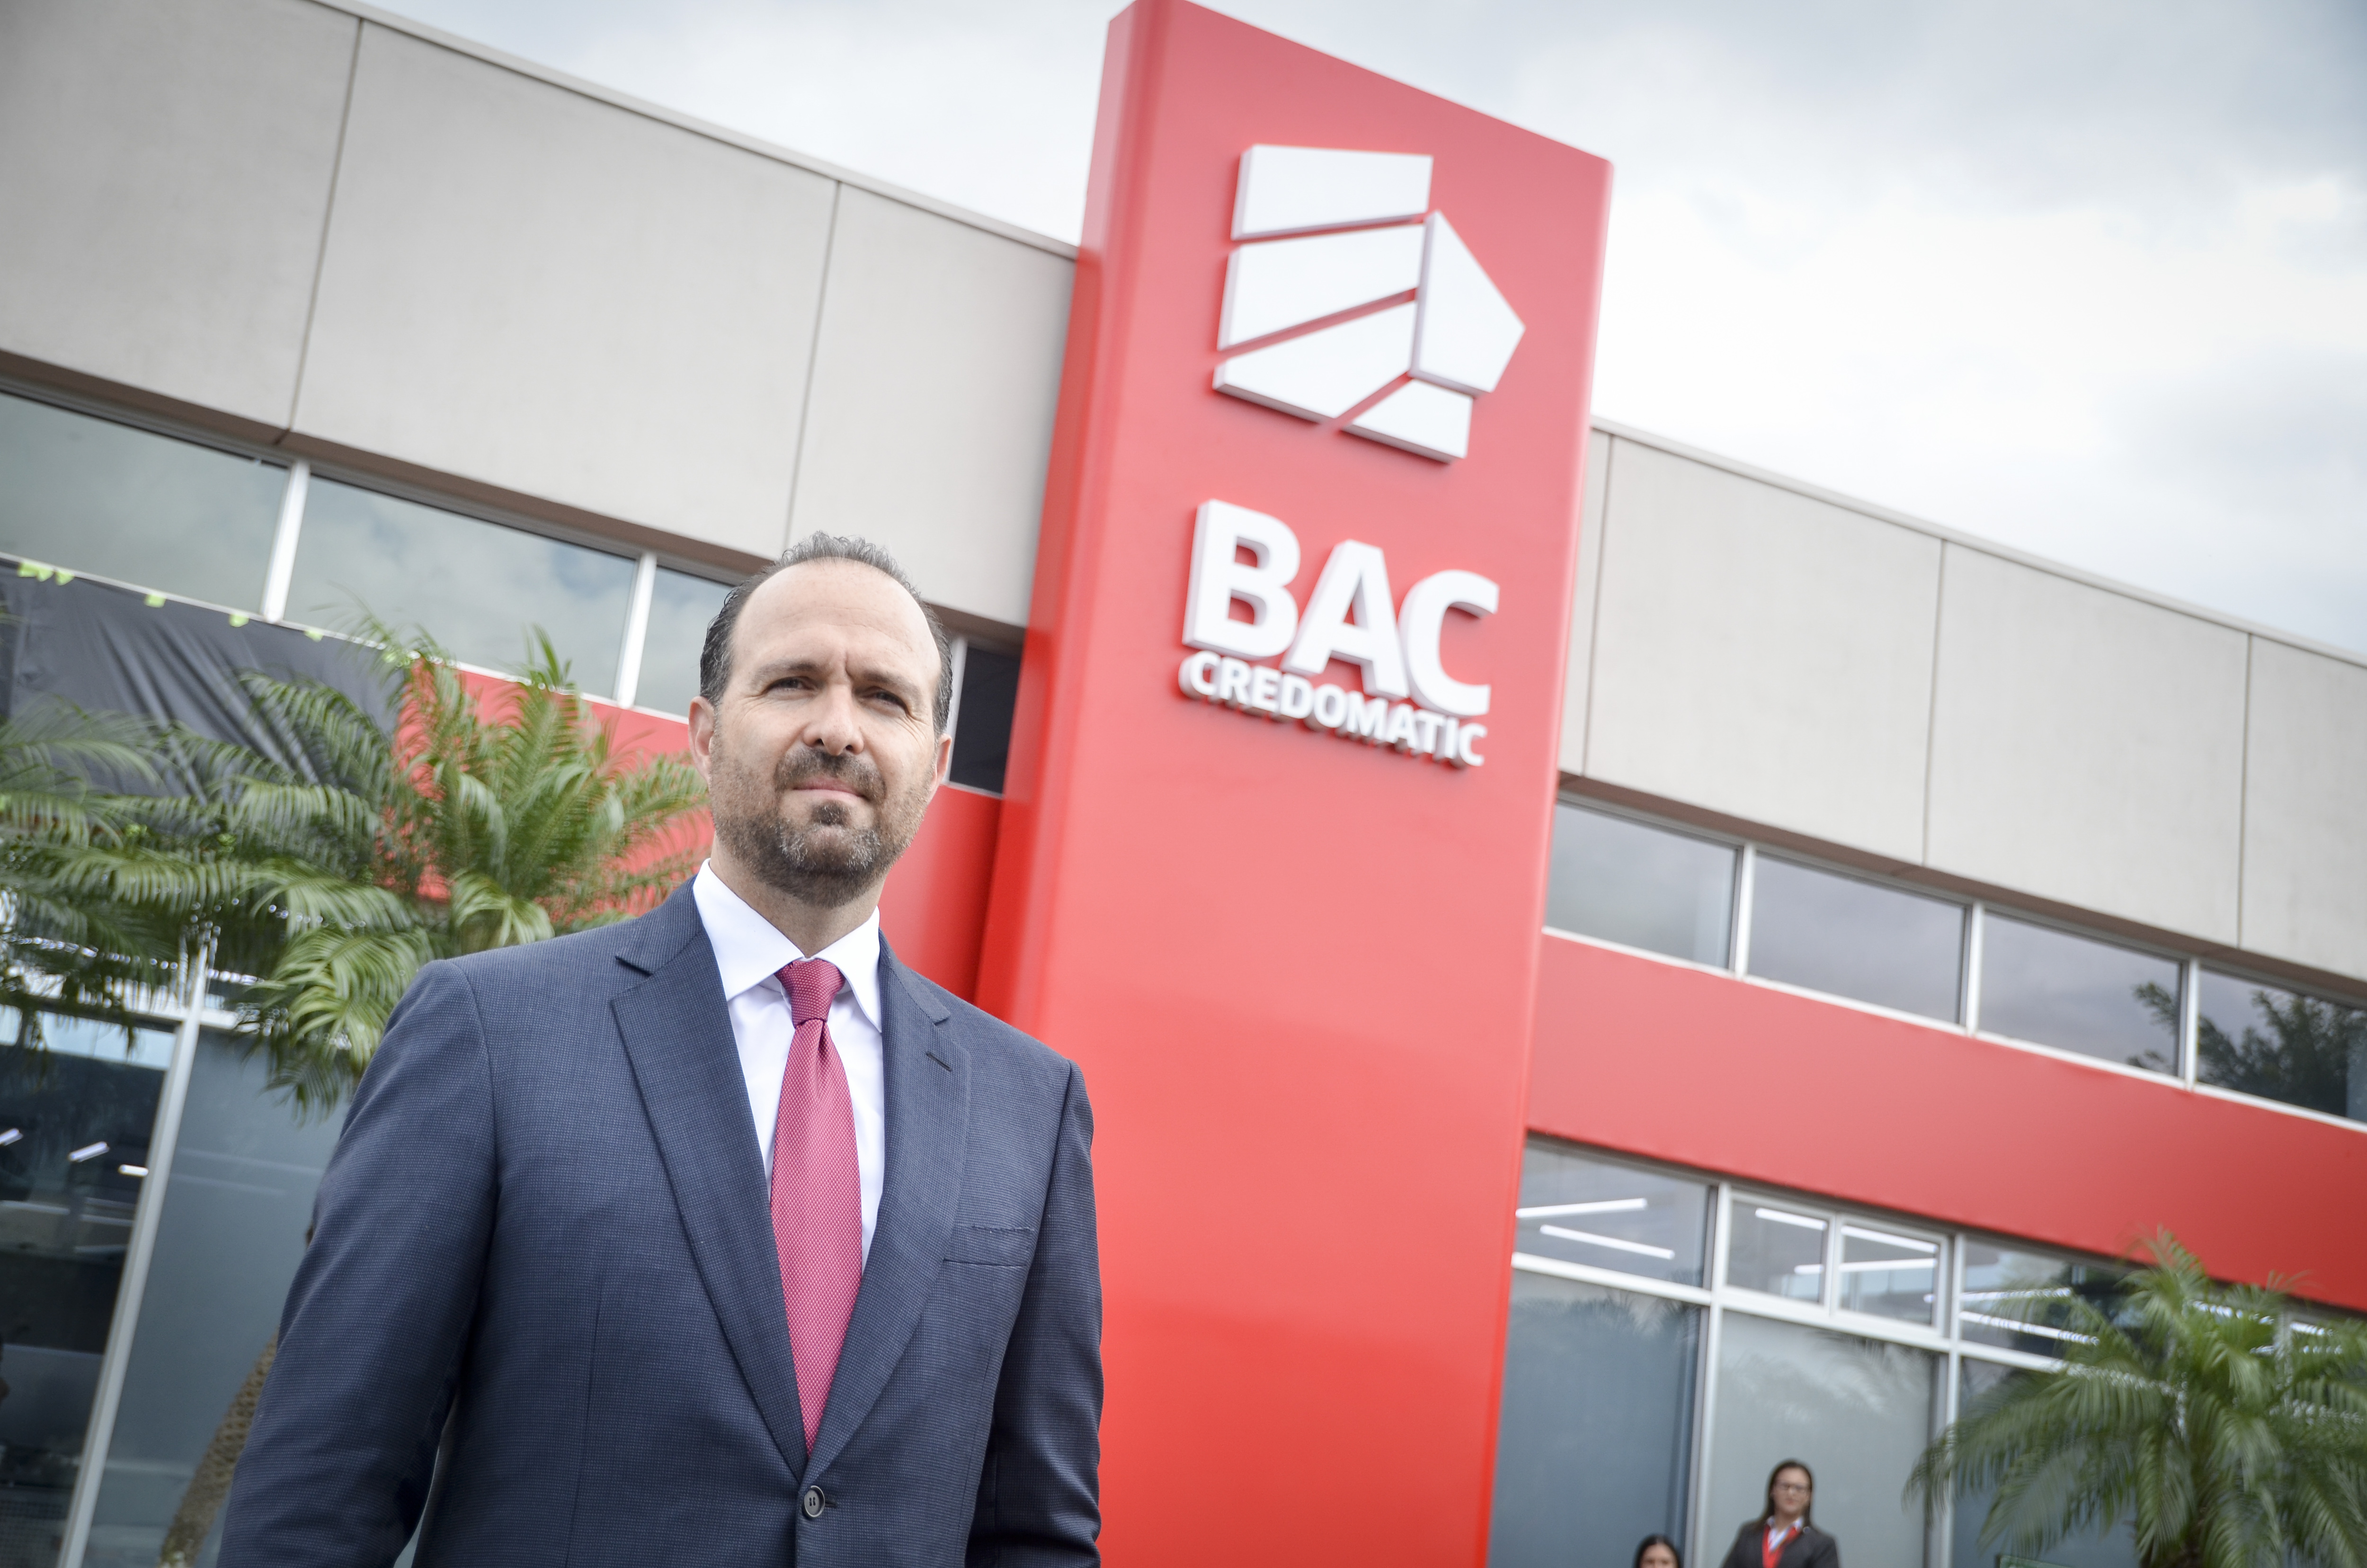 BAC Credomatic unifica su imagen y servicios en la región